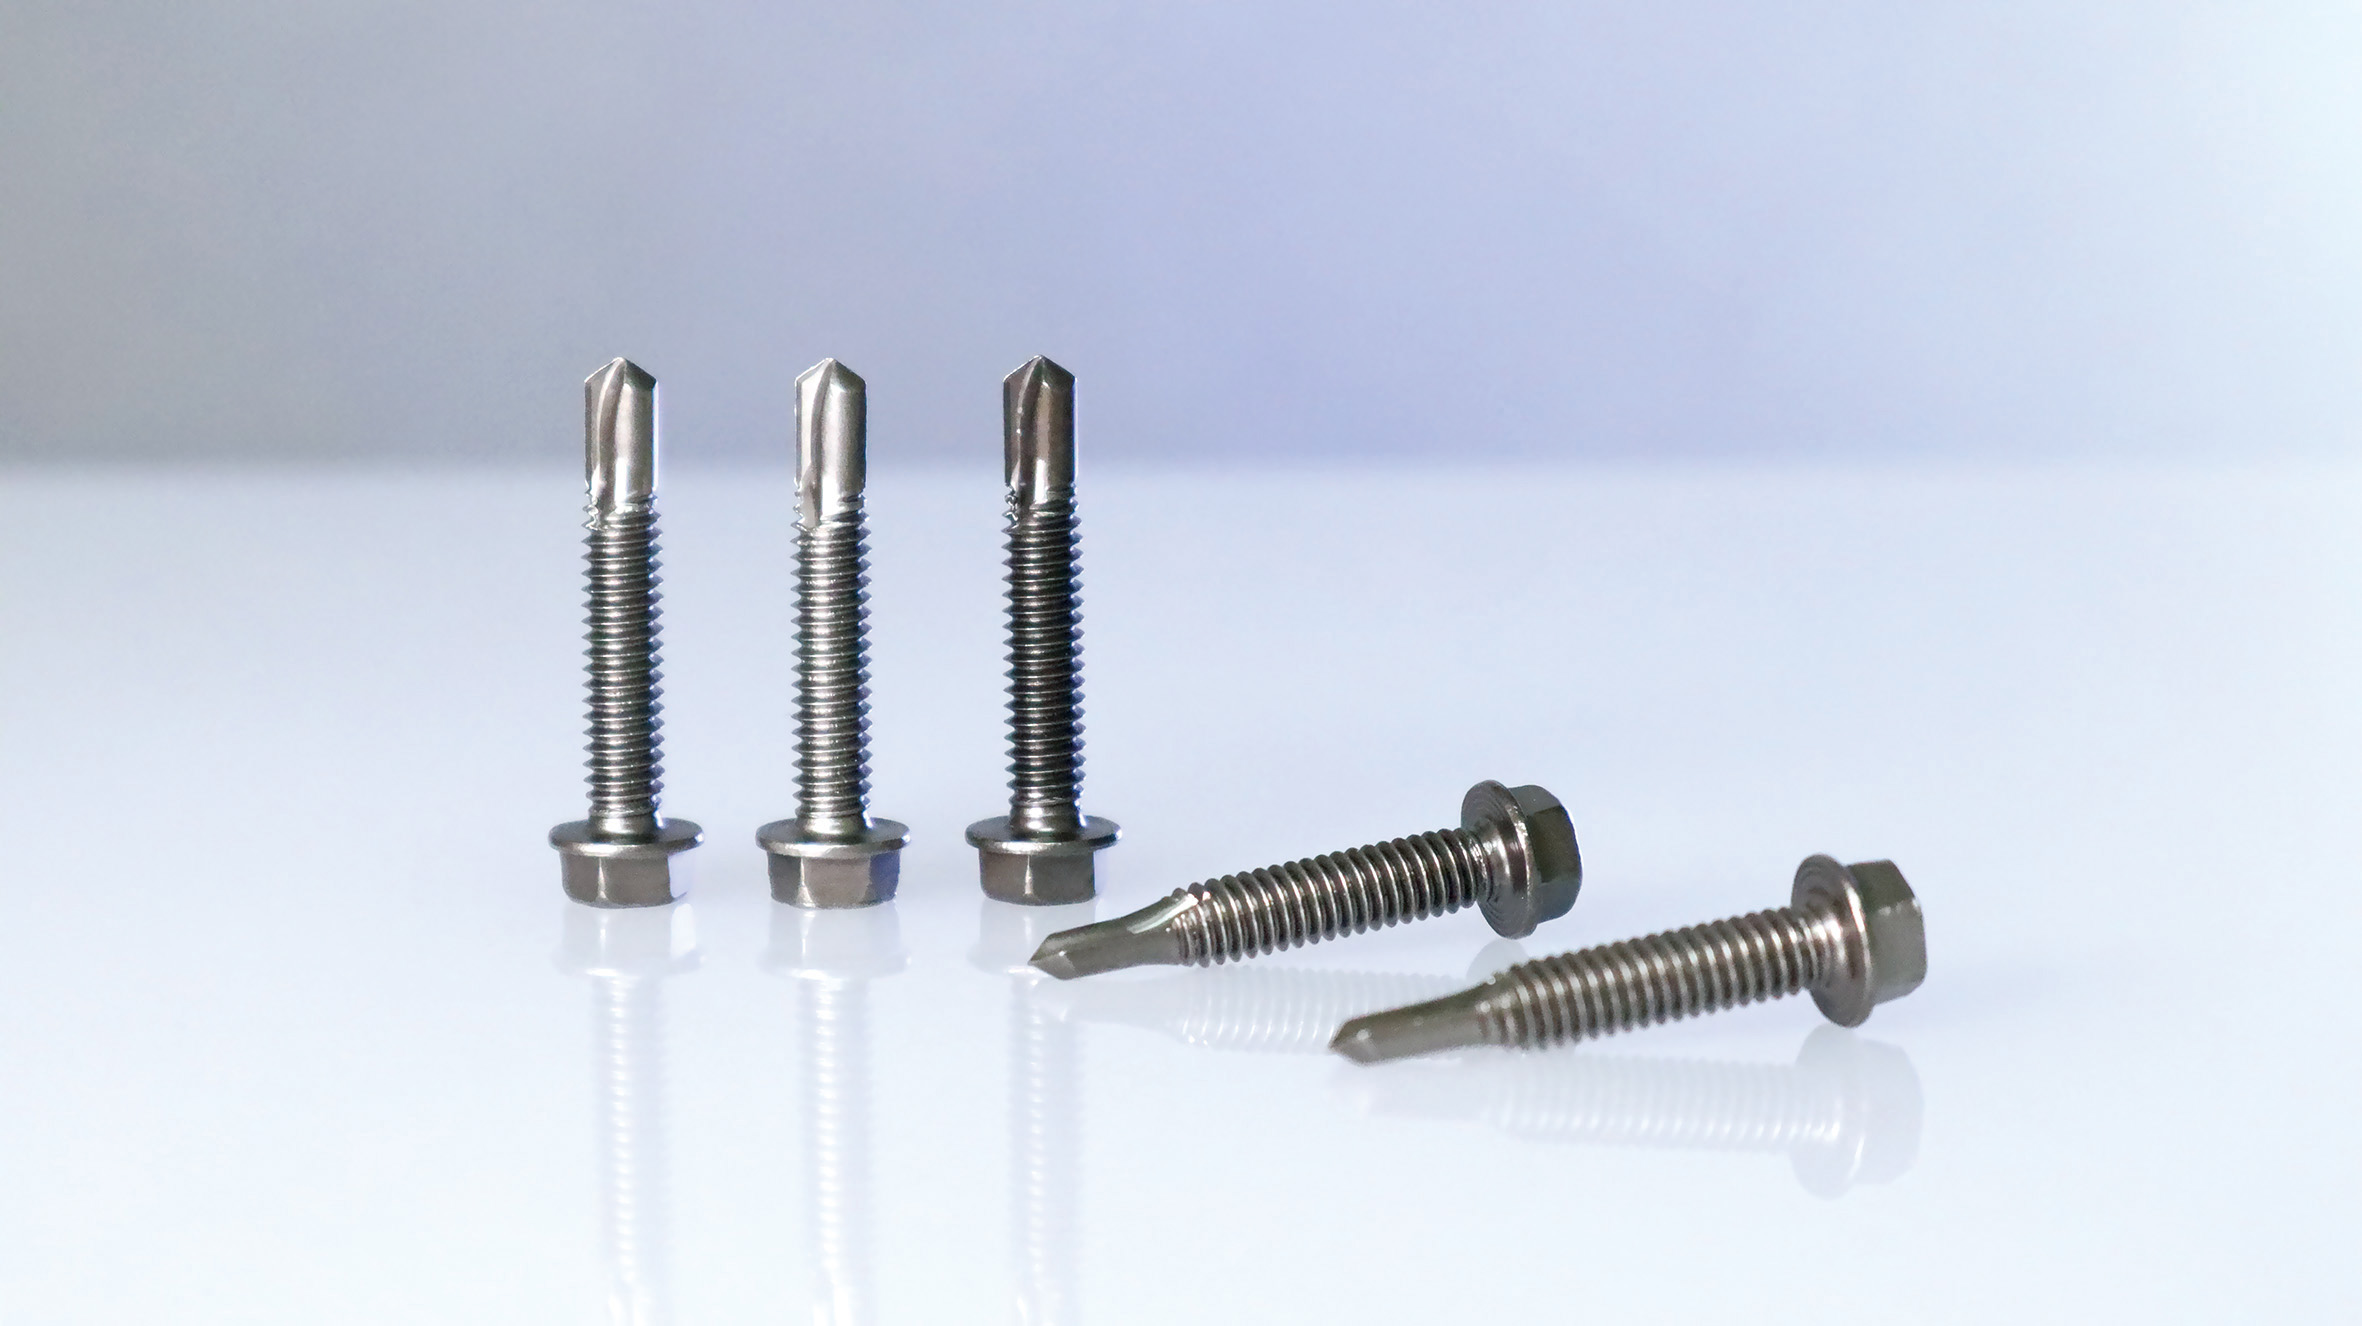 協助扣件廠慶達科技開發高強度一體式不鏽鋼鑽尾螺絲。